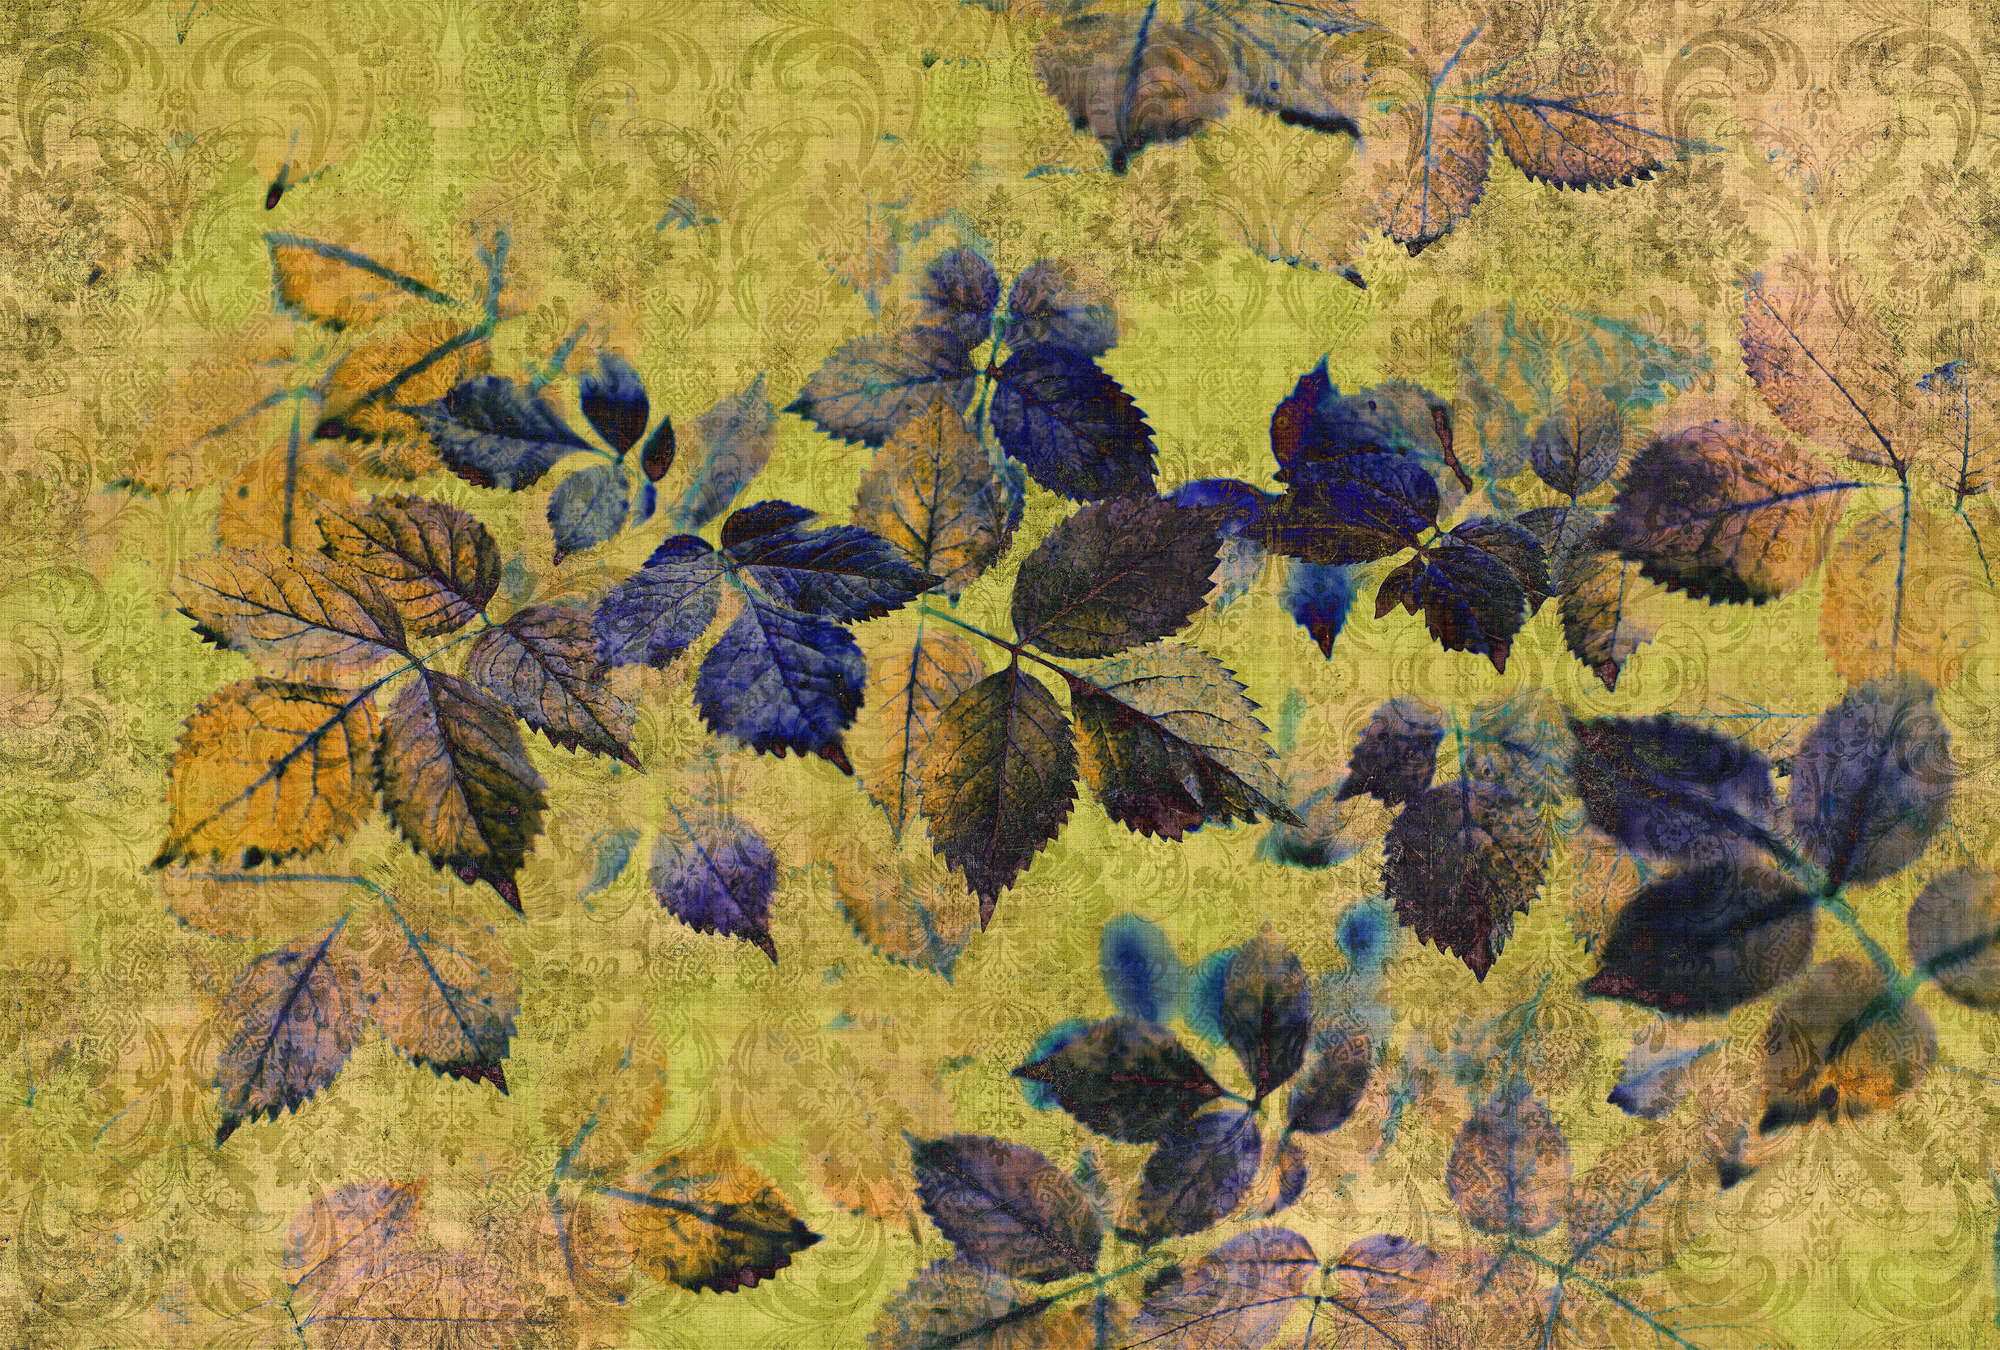             Verano indio 1 - Fotomural con hojas y ornamentos en estructura de lino natural - Amarillo, Naranja | Vellón liso Premium
        